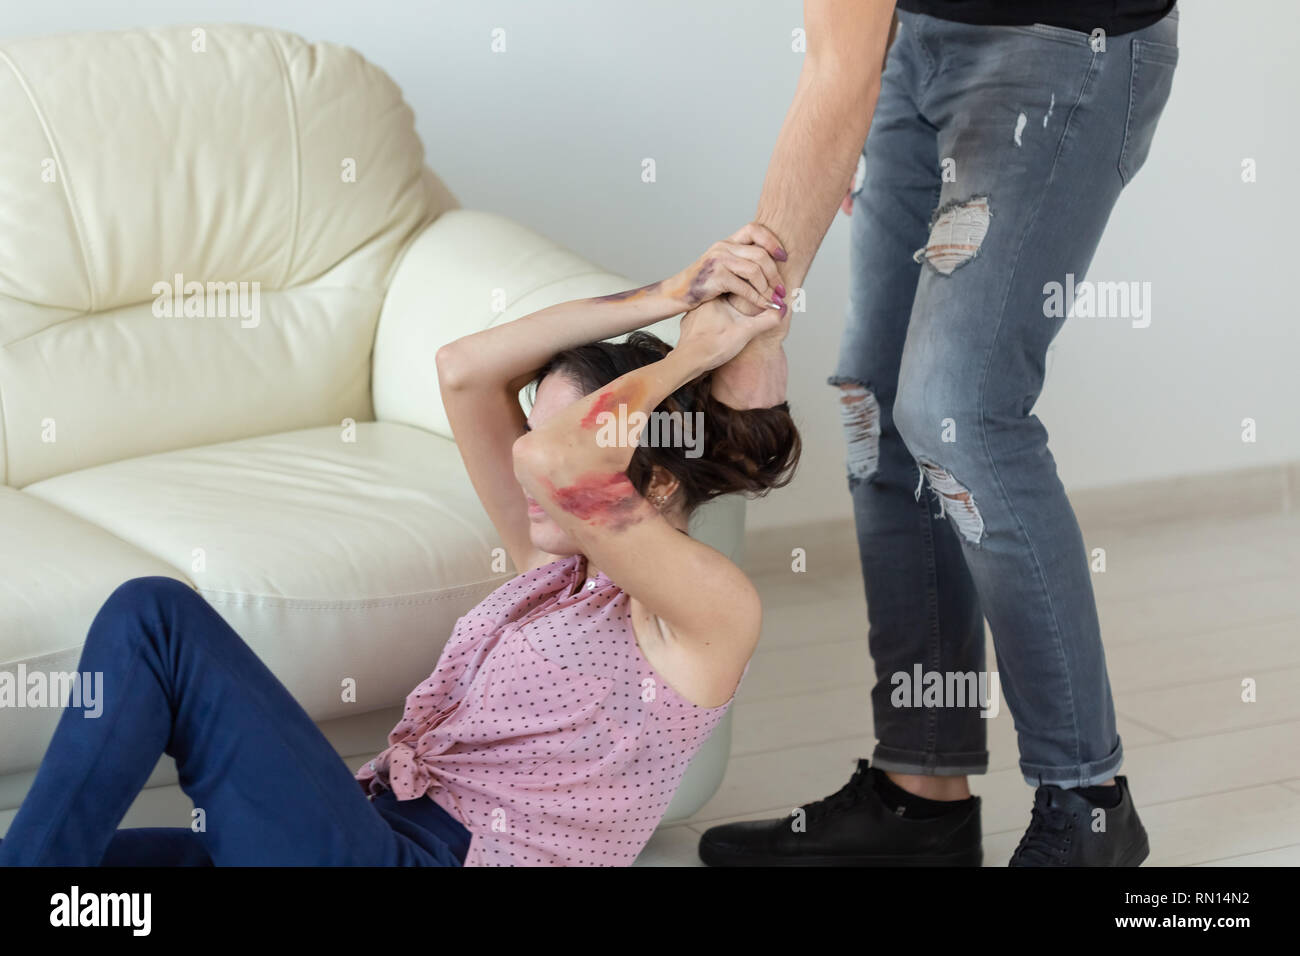 La violencia doméstica, la víctima y el abuso concepto - cruel hombre agresivo agarrando mujer tendida en el suelo Foto de stock